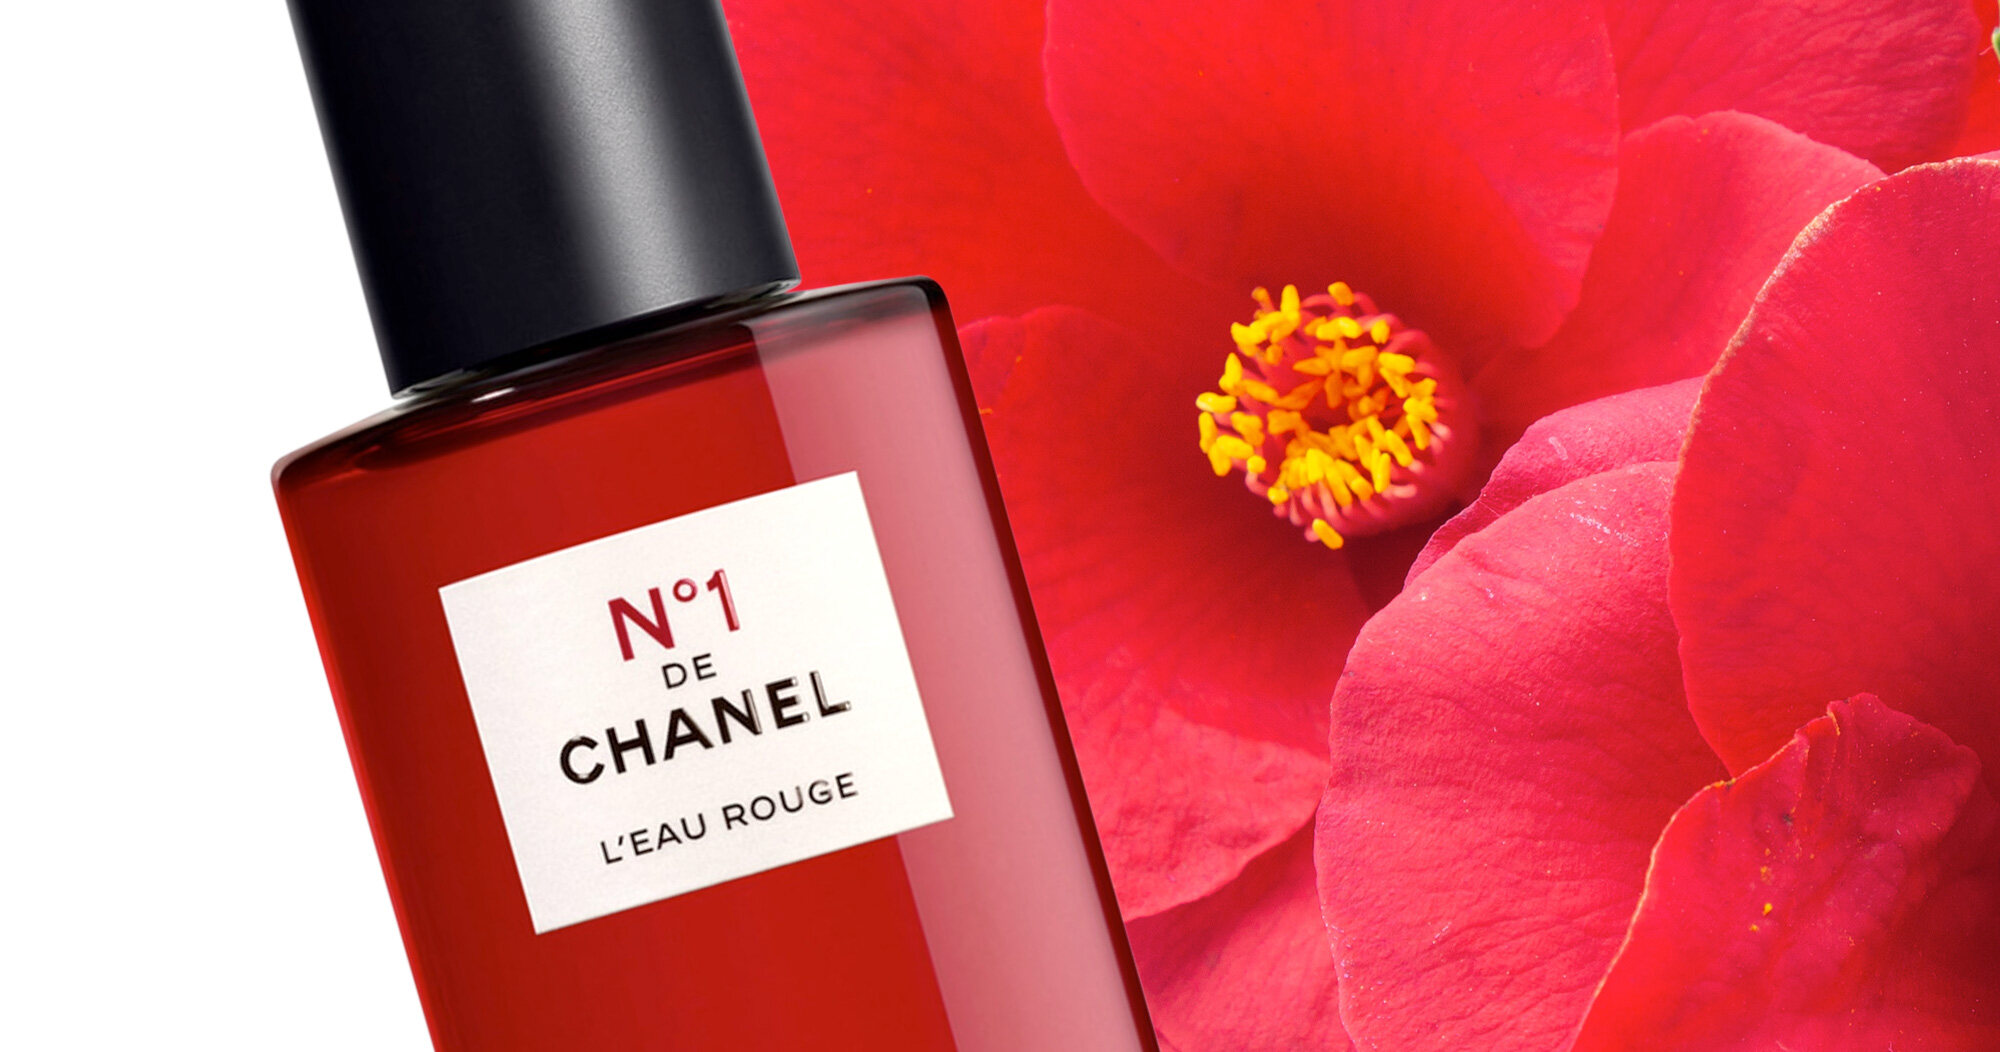 Chanel No.1 De Chanel L'Eau Rouge 100ml (กล่องมีตำหนิ ไม่มีผลต่อการใช้งาน) สเปรย์น้ำหอมที่ให้ความรู้สึกสดชื่นมีชีวิตชีวา จากดอกคามิลเลียสีแดง กลิ่นที่ให้ความสดชื่น เปล่งประกาย ชวนให้รู้สึกกระปรี้กระเปร่า และกลิ่นที่อ่อนโยนและบอบบาง